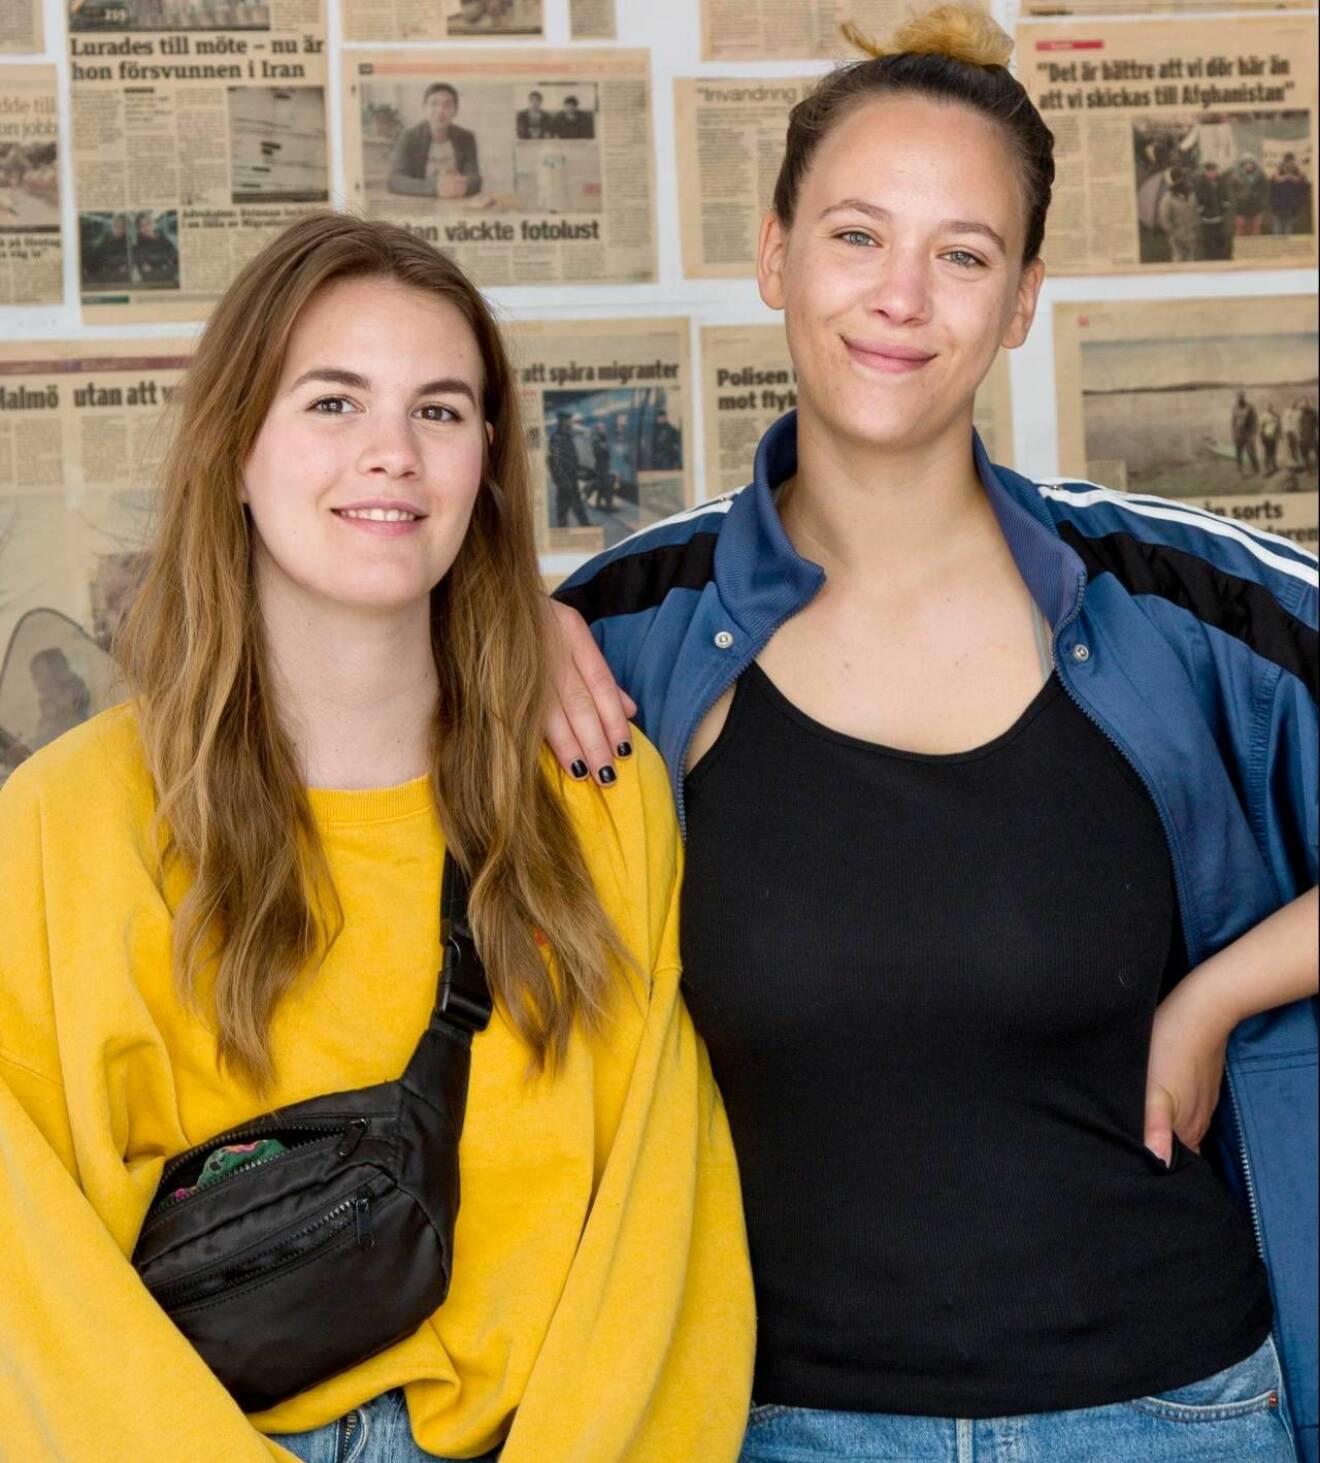 Mira Björkegren, projektedare och Bea Rundström, socionom arbetar tillsammans på Ensamkommandes Förbund, en mötesplats för nyanlända ungdomar.